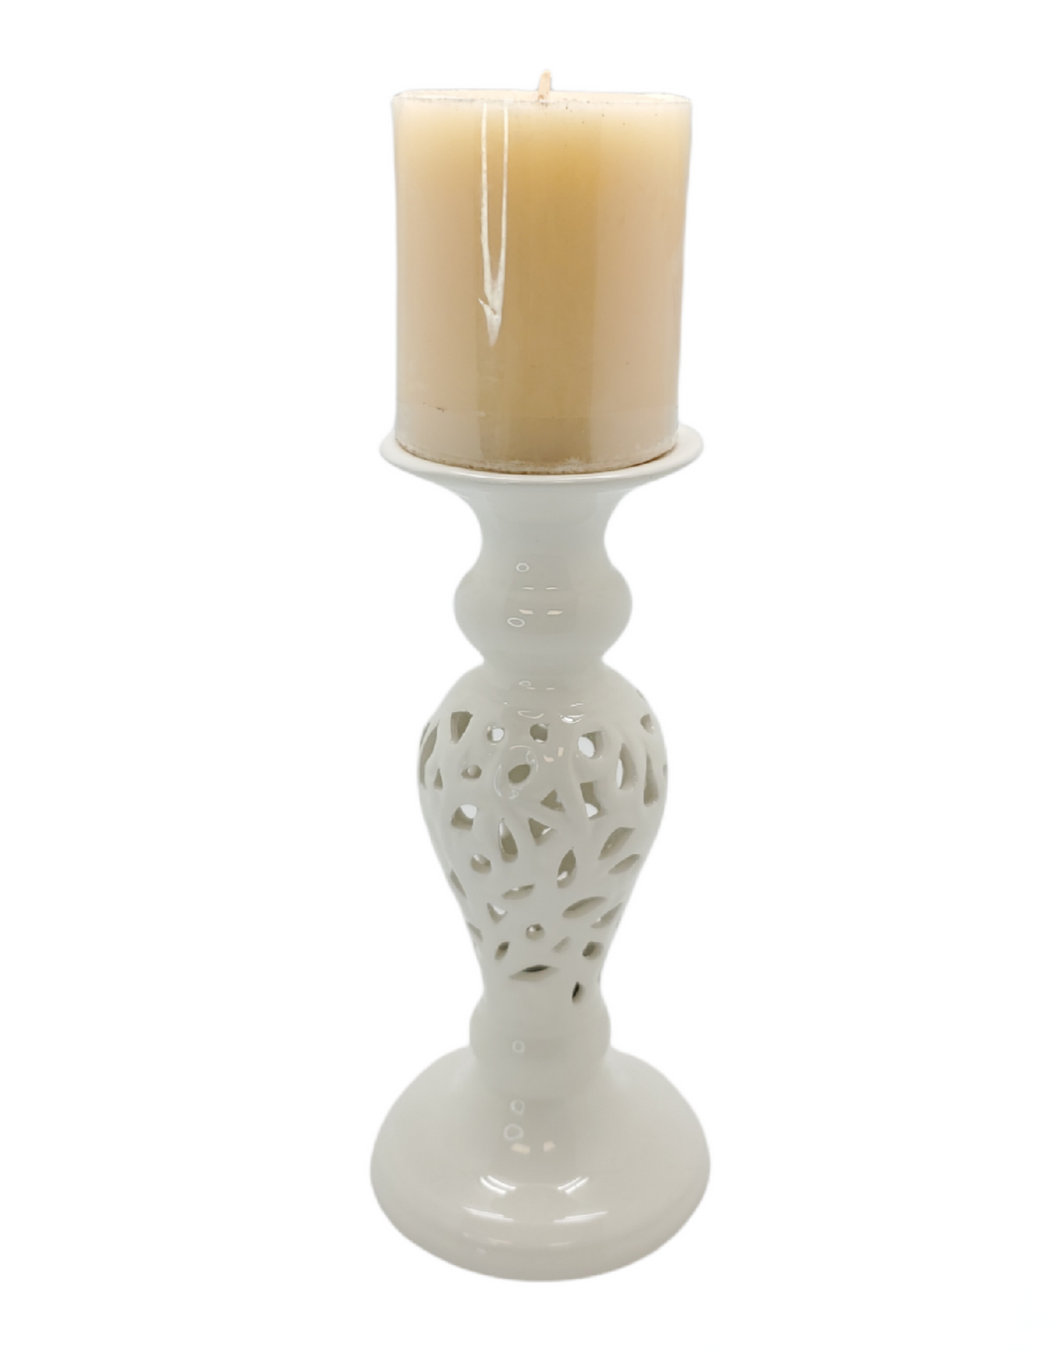 Debora Carlucci Porcelain Candle Holder w. Carving Design  #34013